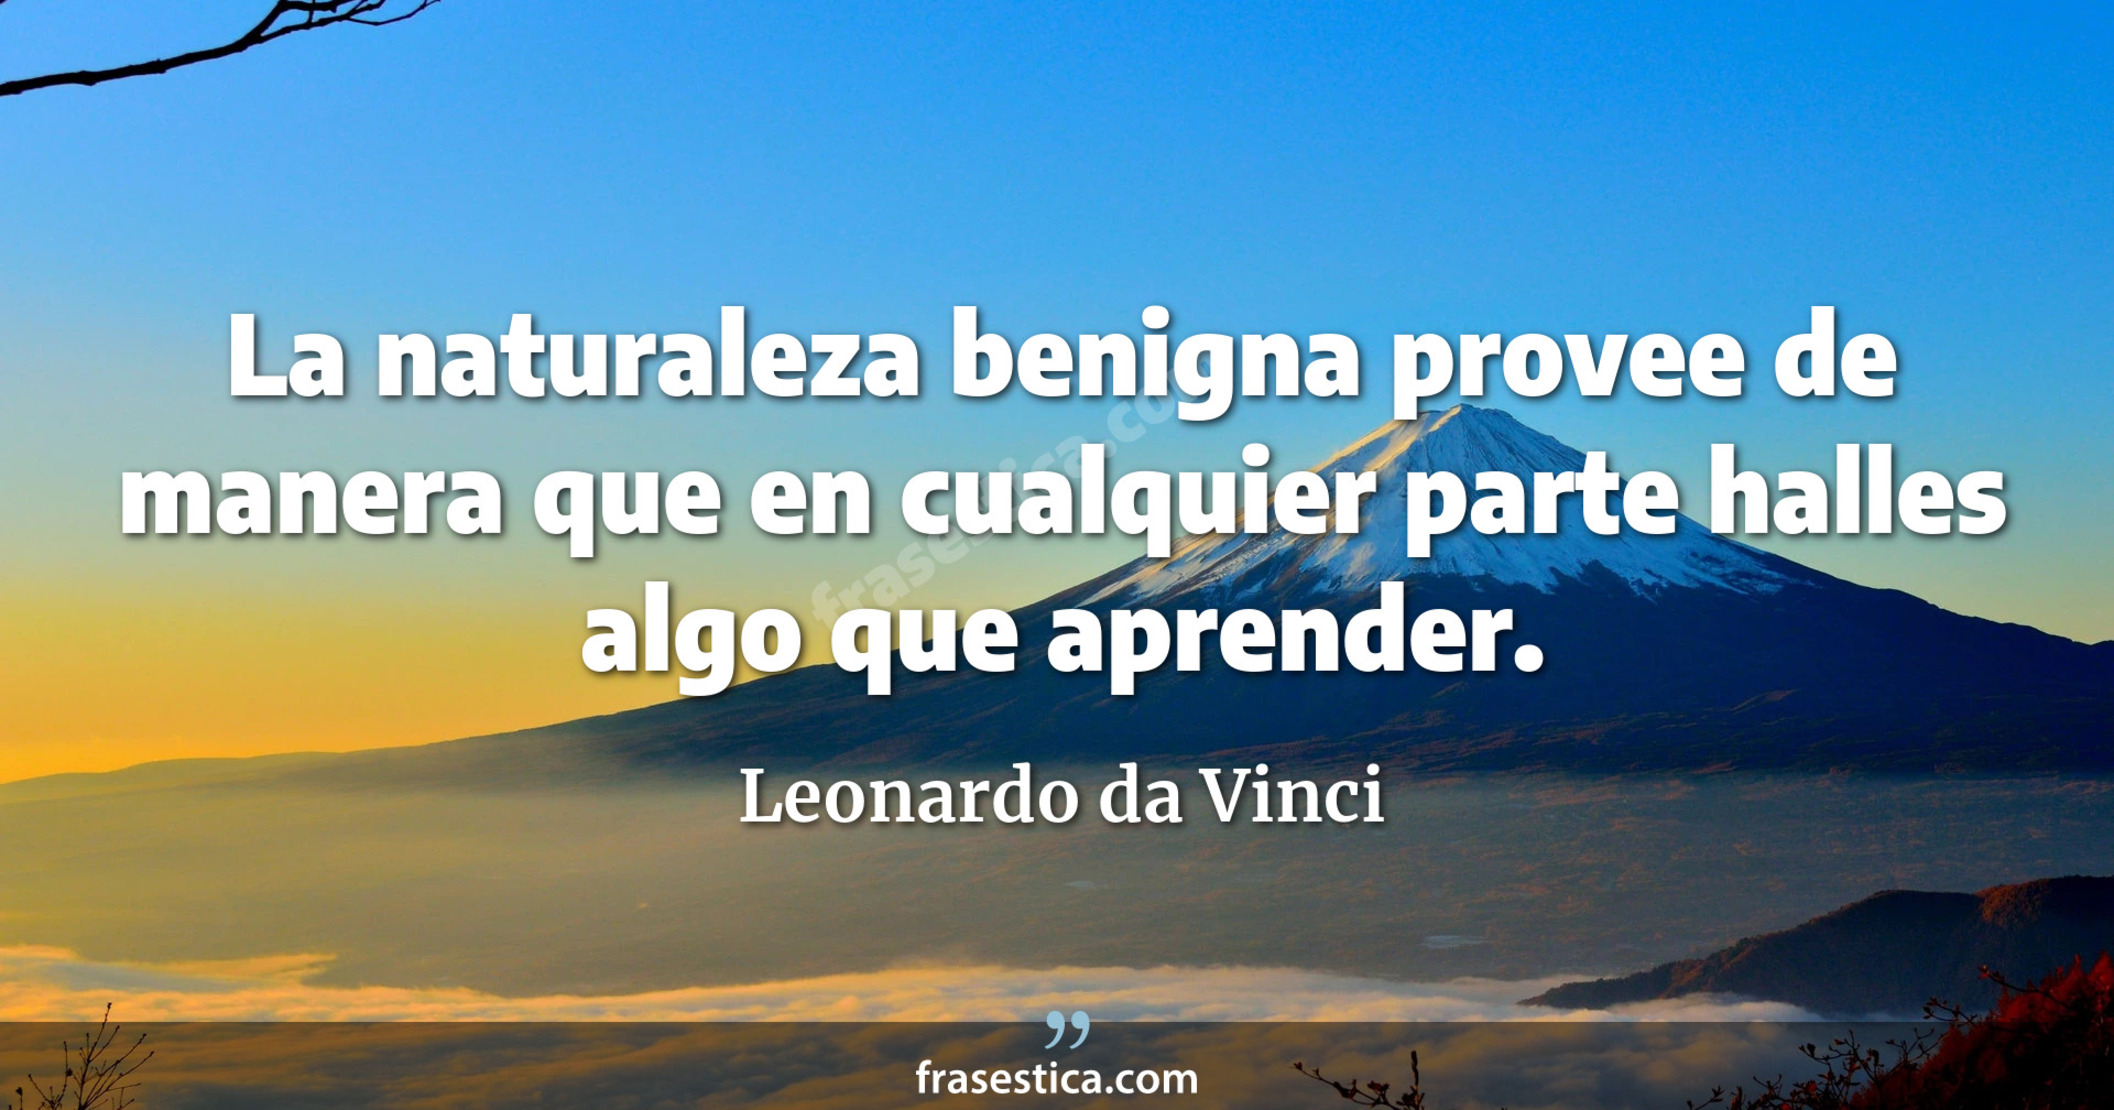 La naturaleza benigna provee de manera que en cualquier parte halles algo que aprender. - Leonardo da Vinci